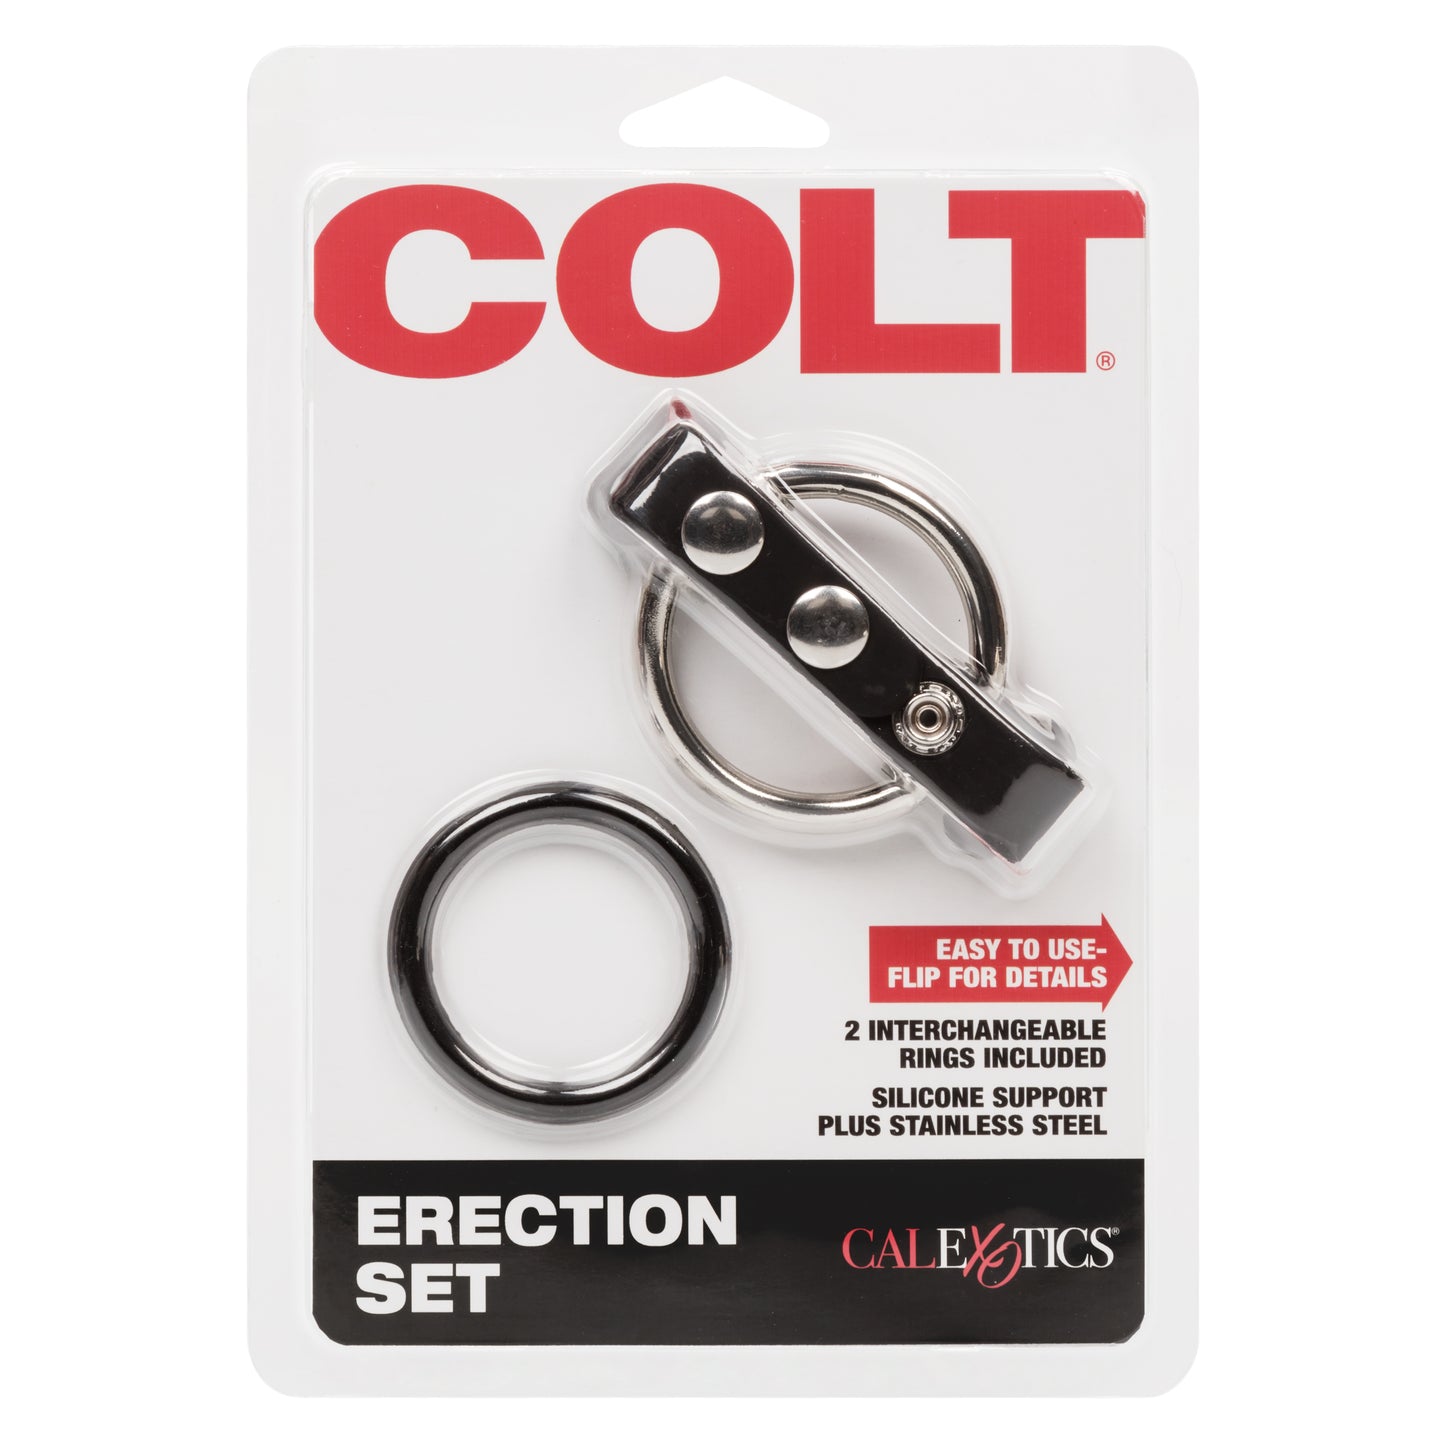 COLT® Erection Set